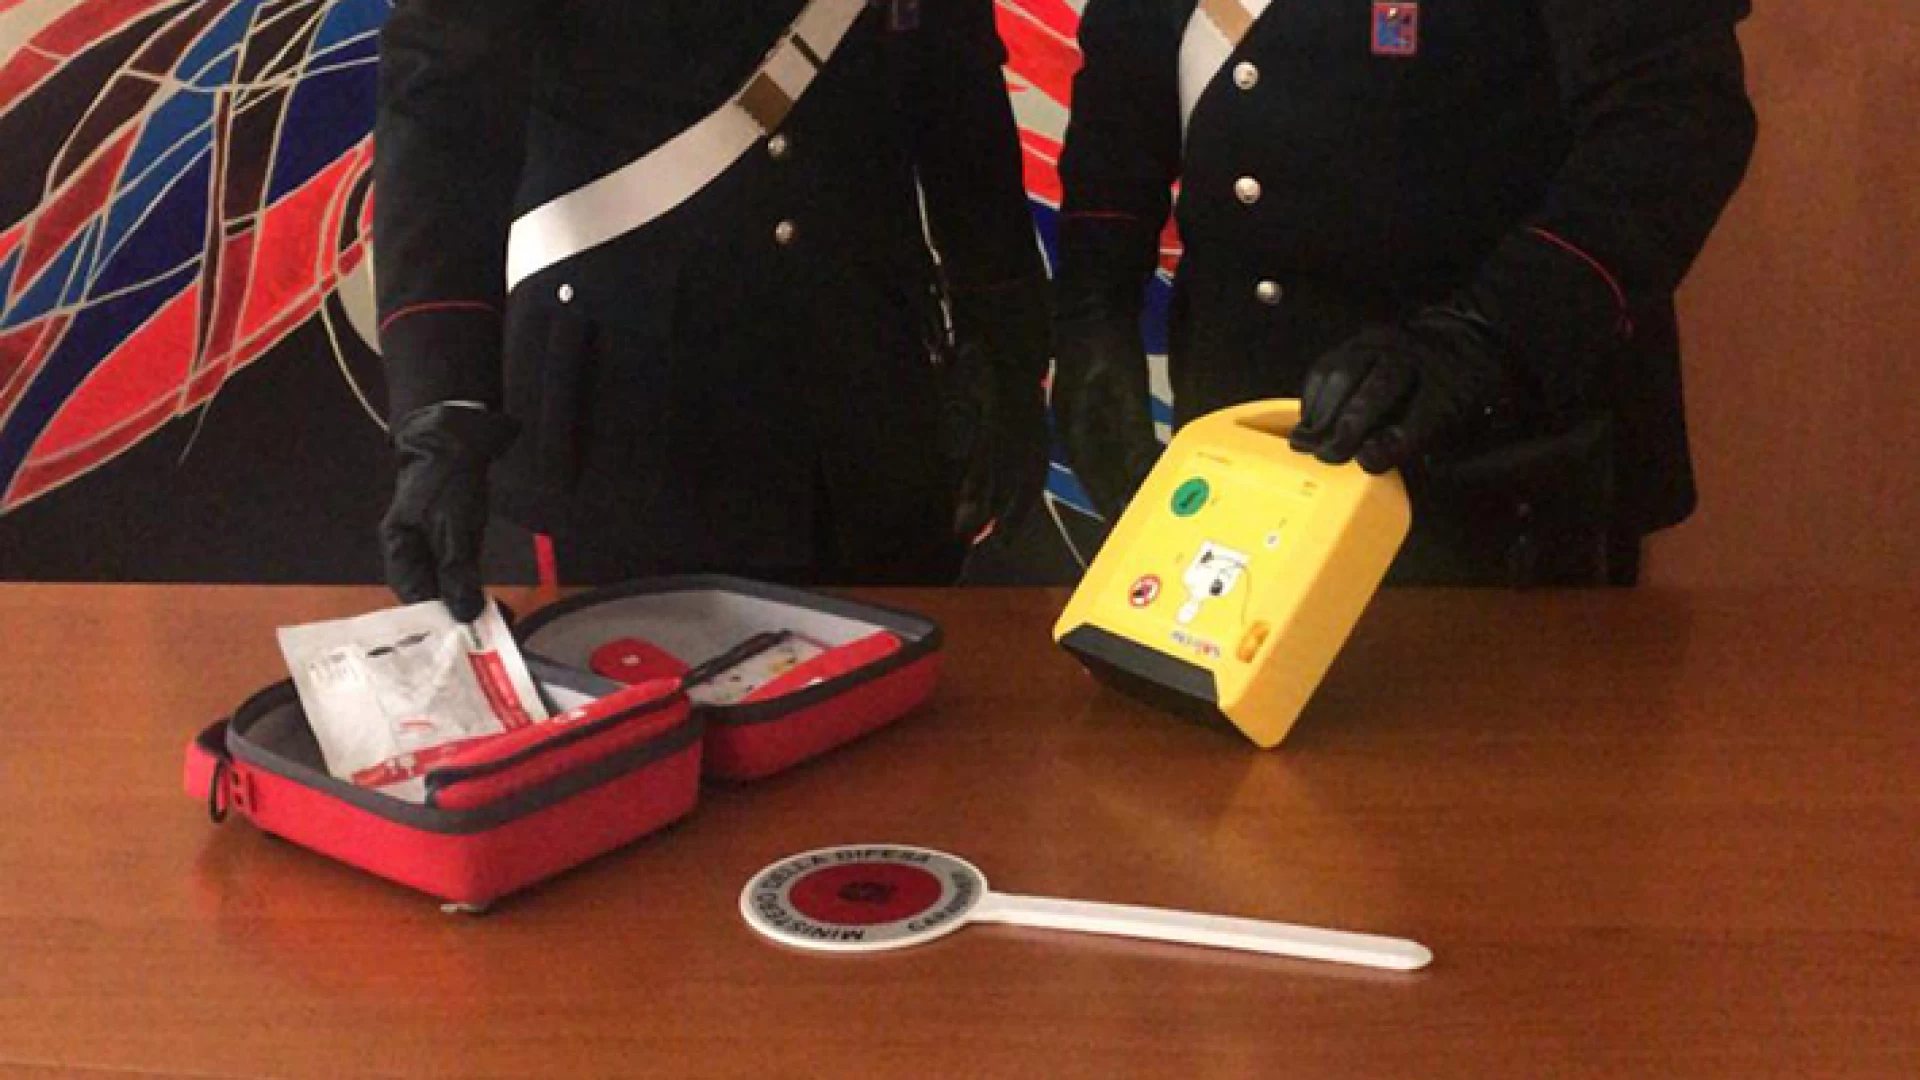 Isernia:  I Carabinieri di Isernia recuperano un defibrillatore rubato all’ospedale locale e denunciano un soggetto per ricettazione.